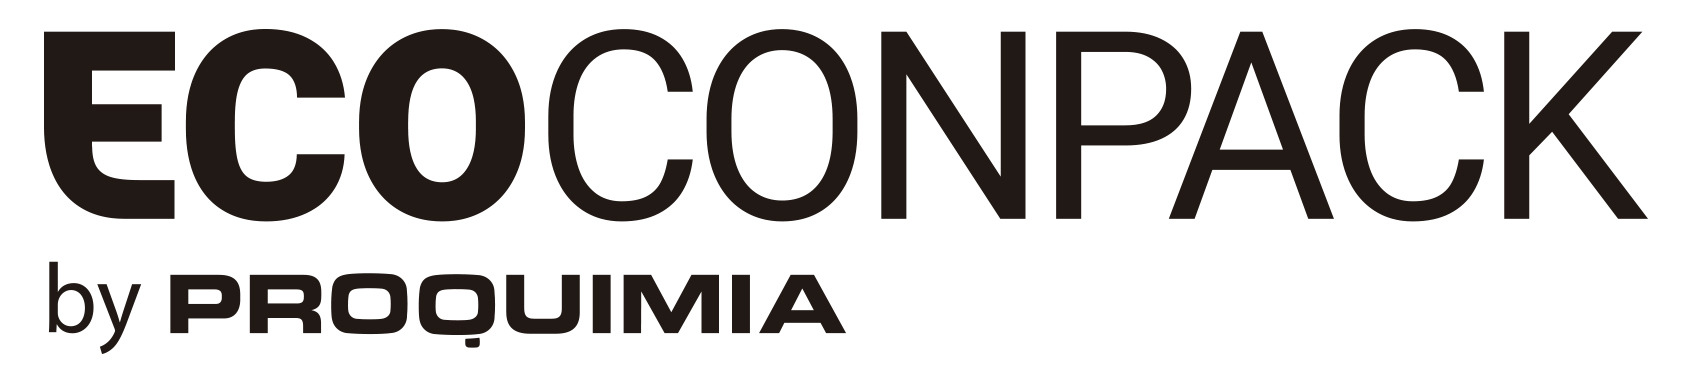 logo_Ecoconpack